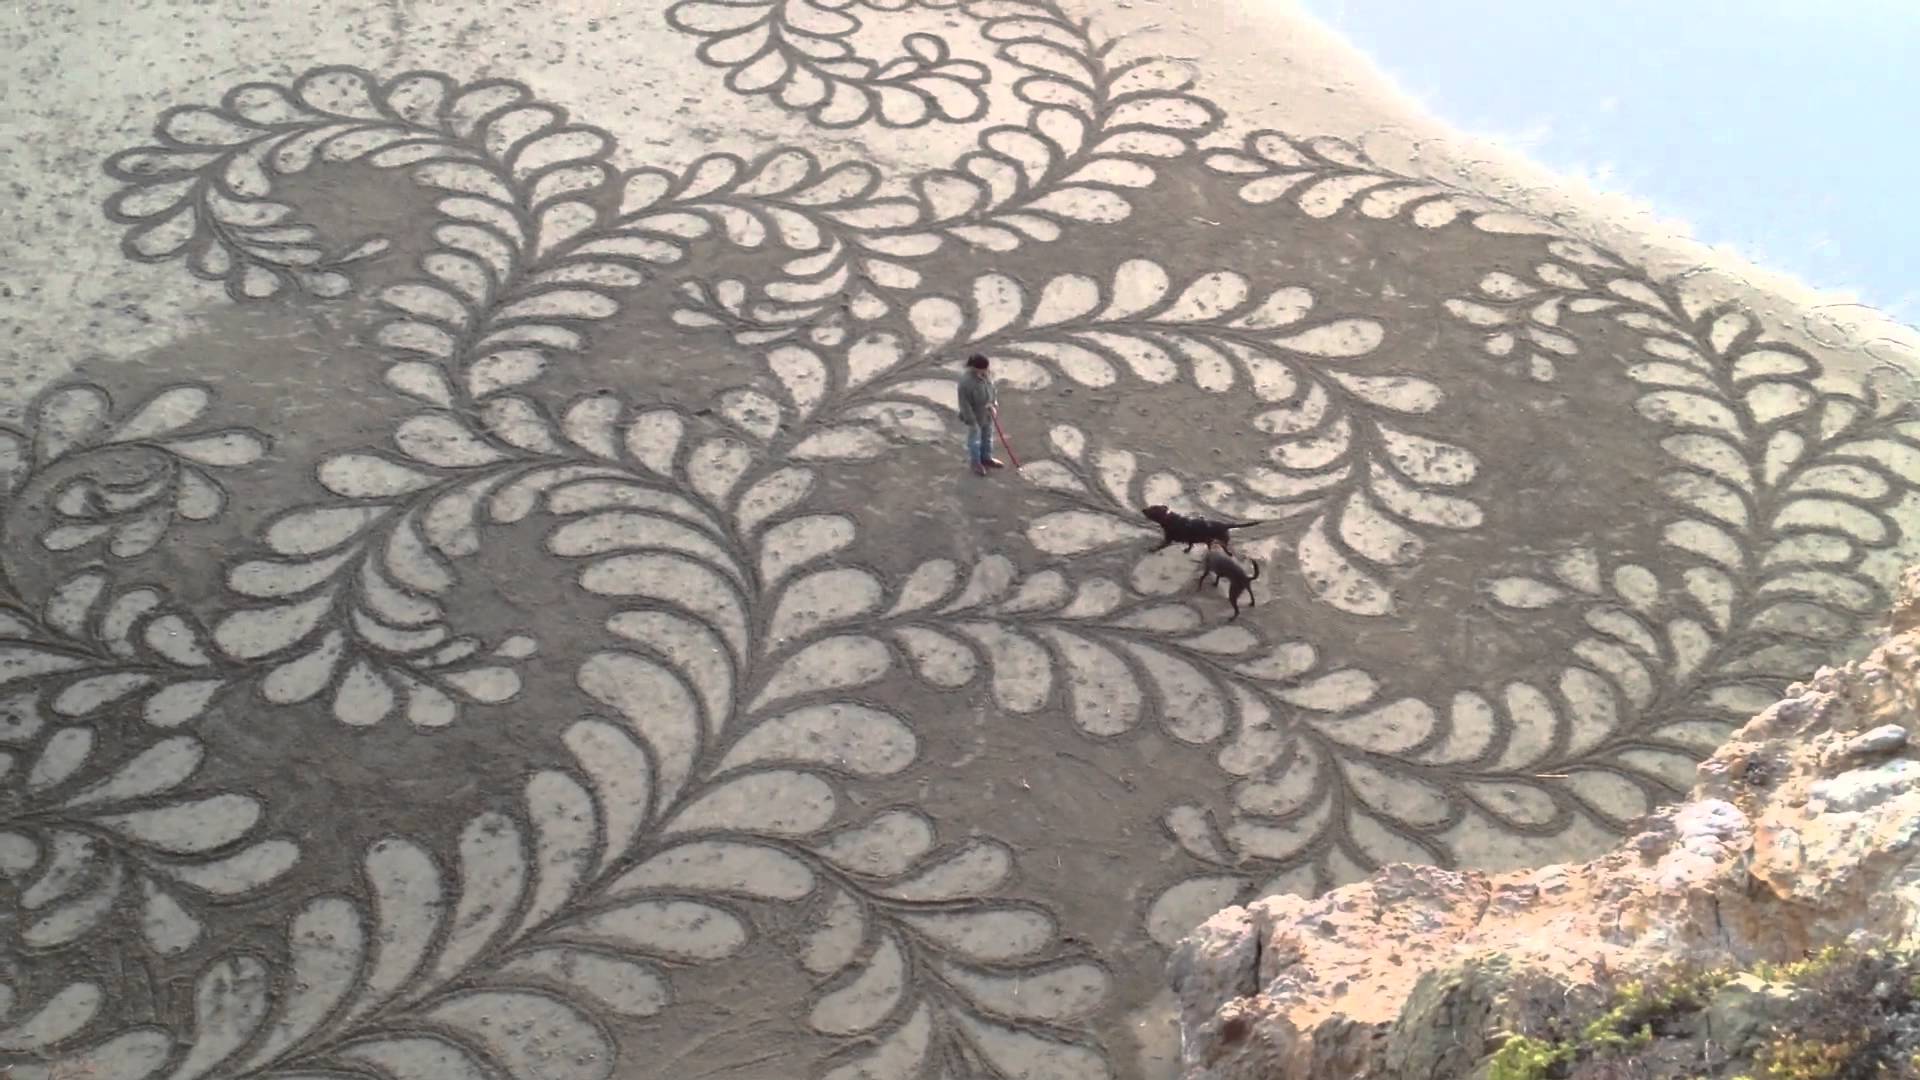 Ocean Beach Sand Art - YouTube